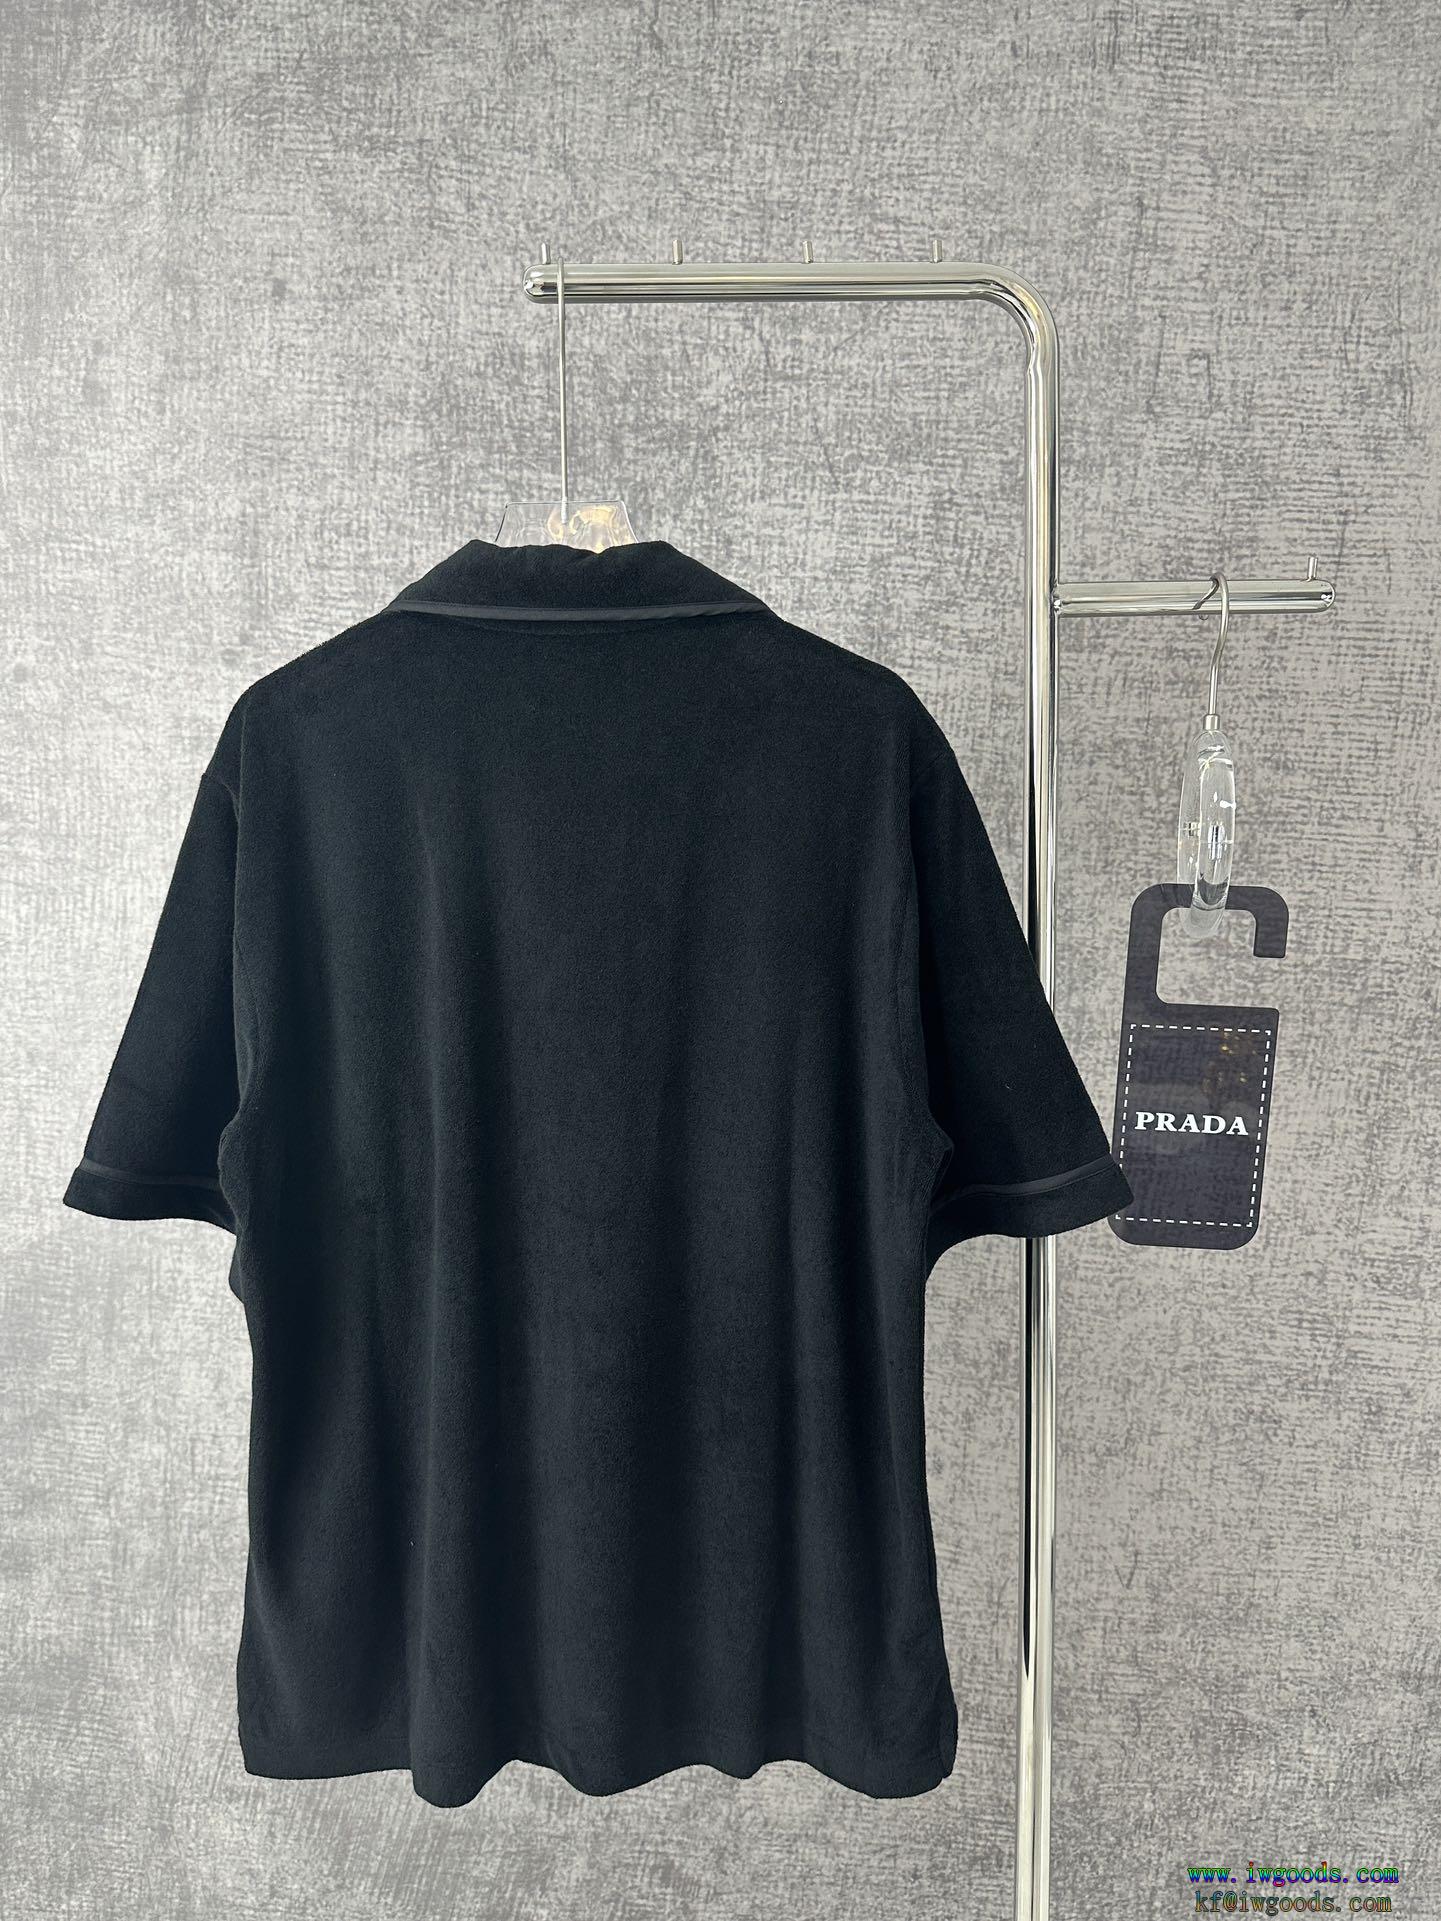 プラダPRADA偽 ブランド 通販半袖シャツ今年の大トレンド着心地のいい